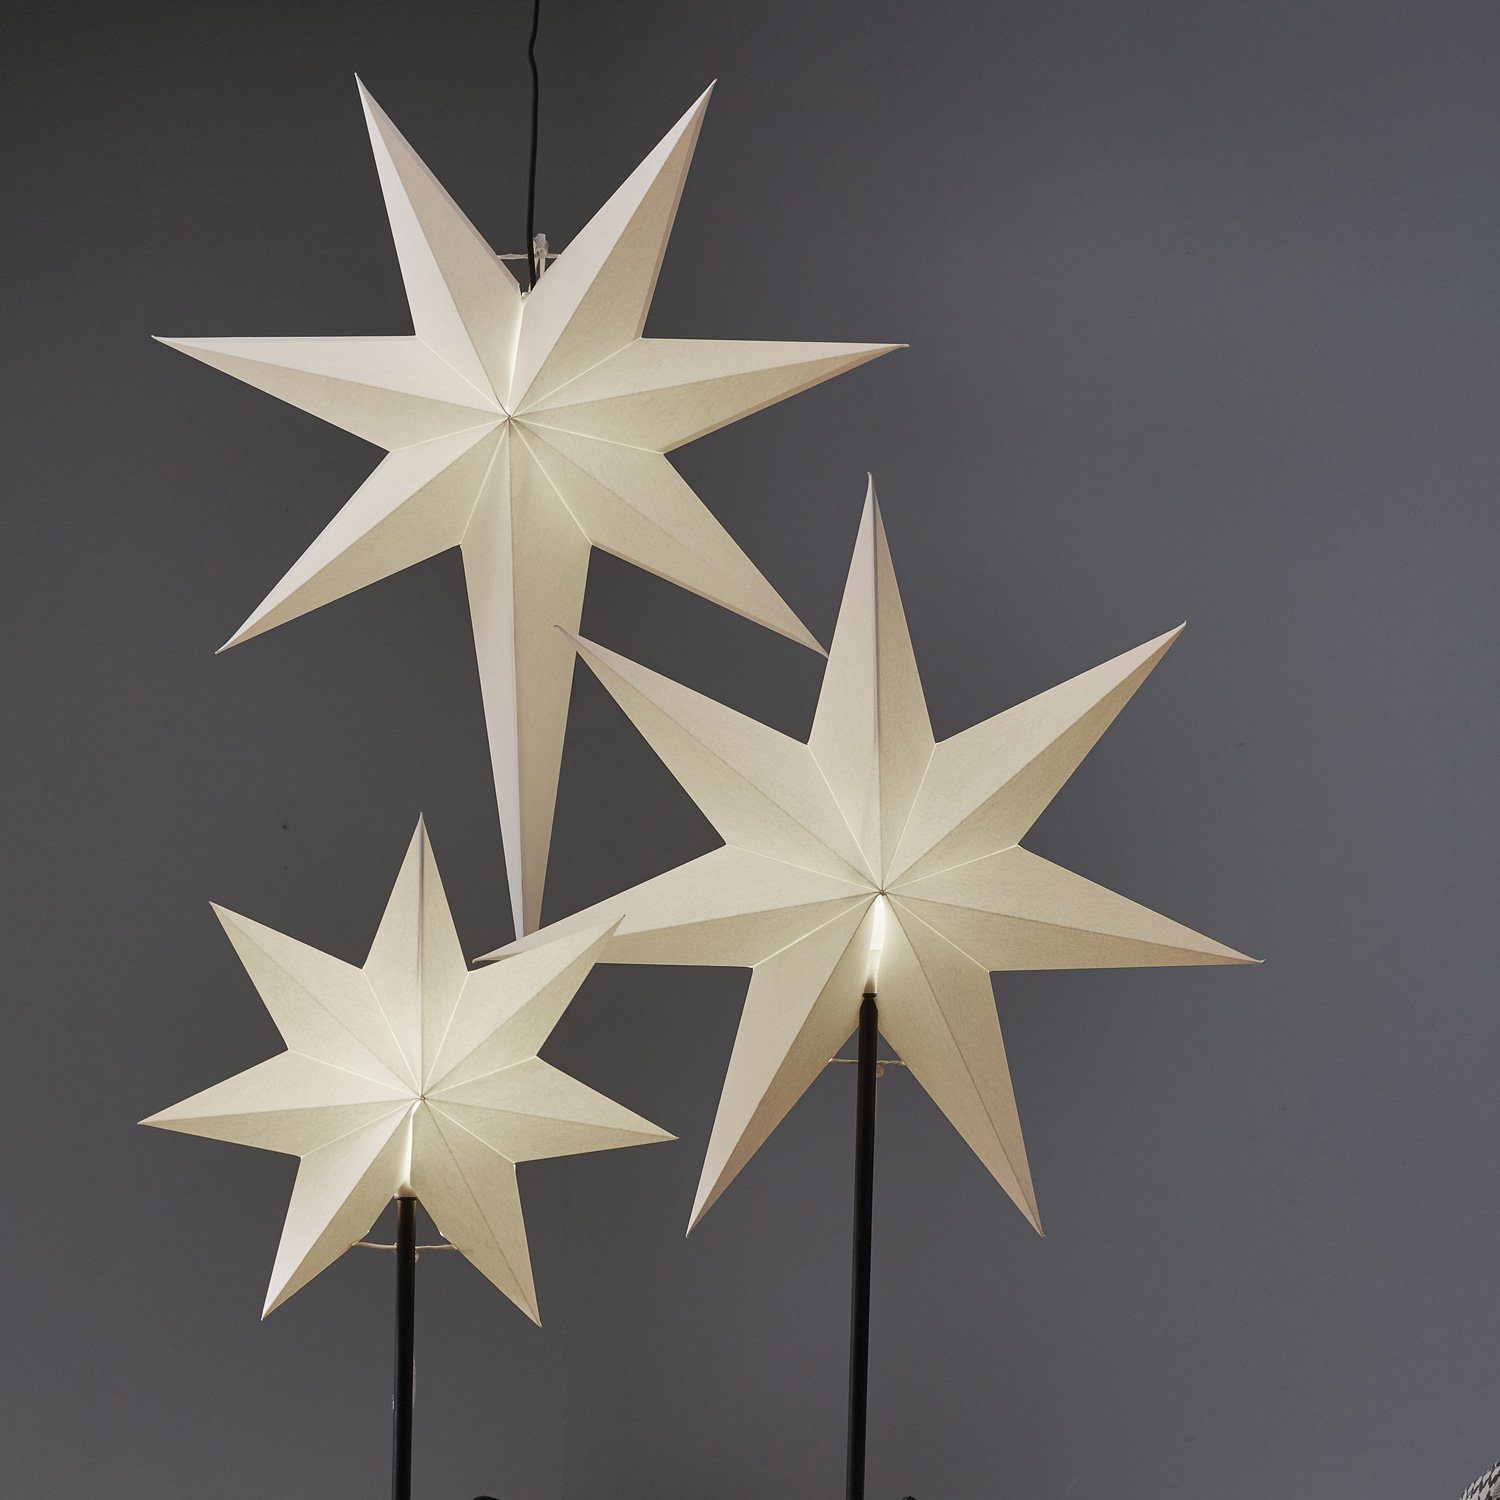 Stern 7-zackig E14 STAR Kabel inkl. 55cm Weihnachtsstern LED stehend weiß Papierstern TRADING